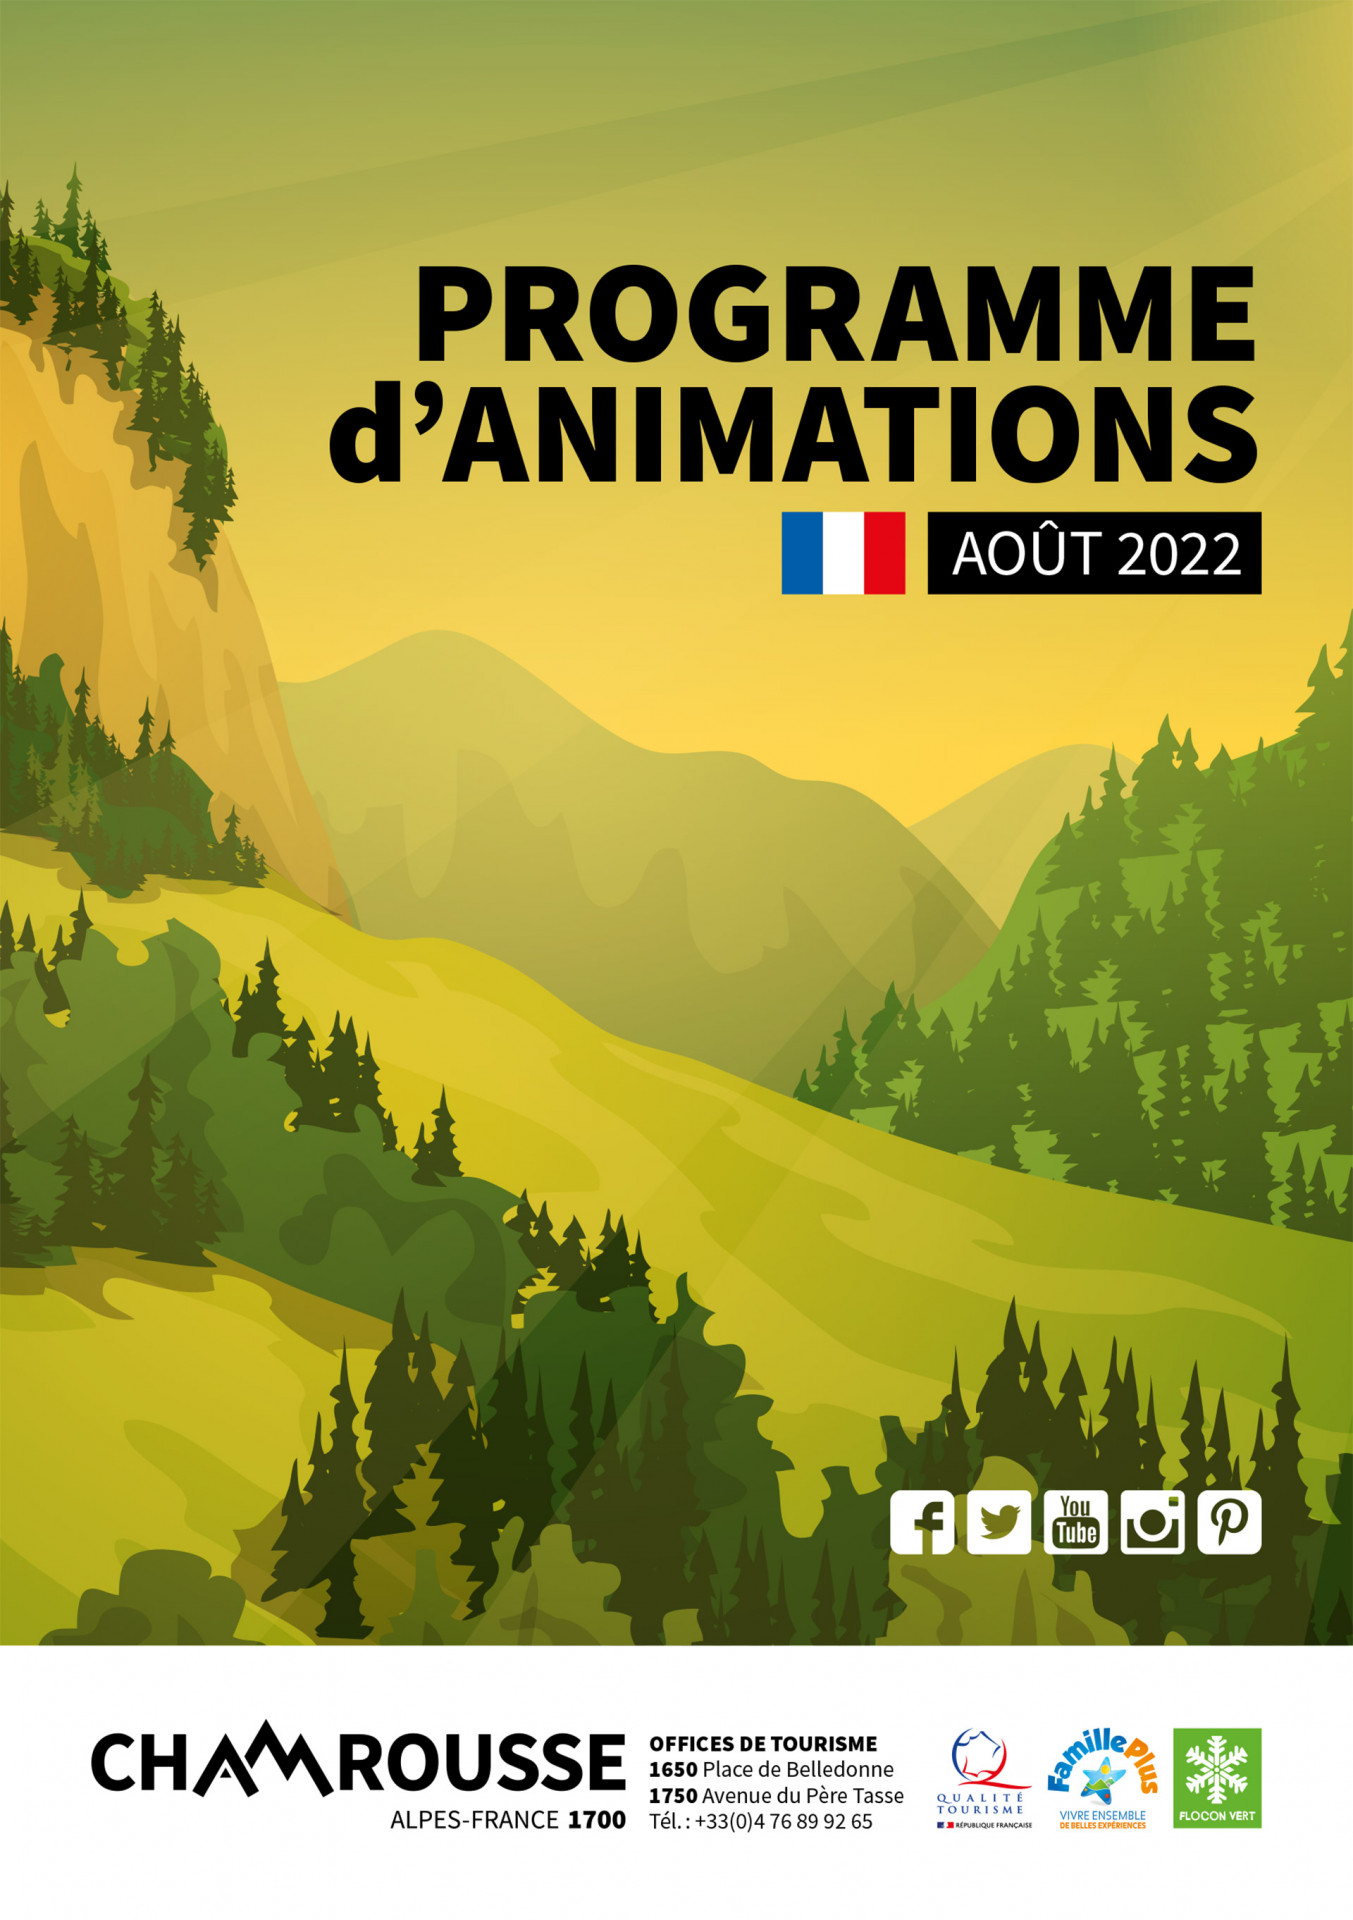 Chamrousse programme animation événement juillet été 2022 station montagne grenoble belledonne isère alpes france